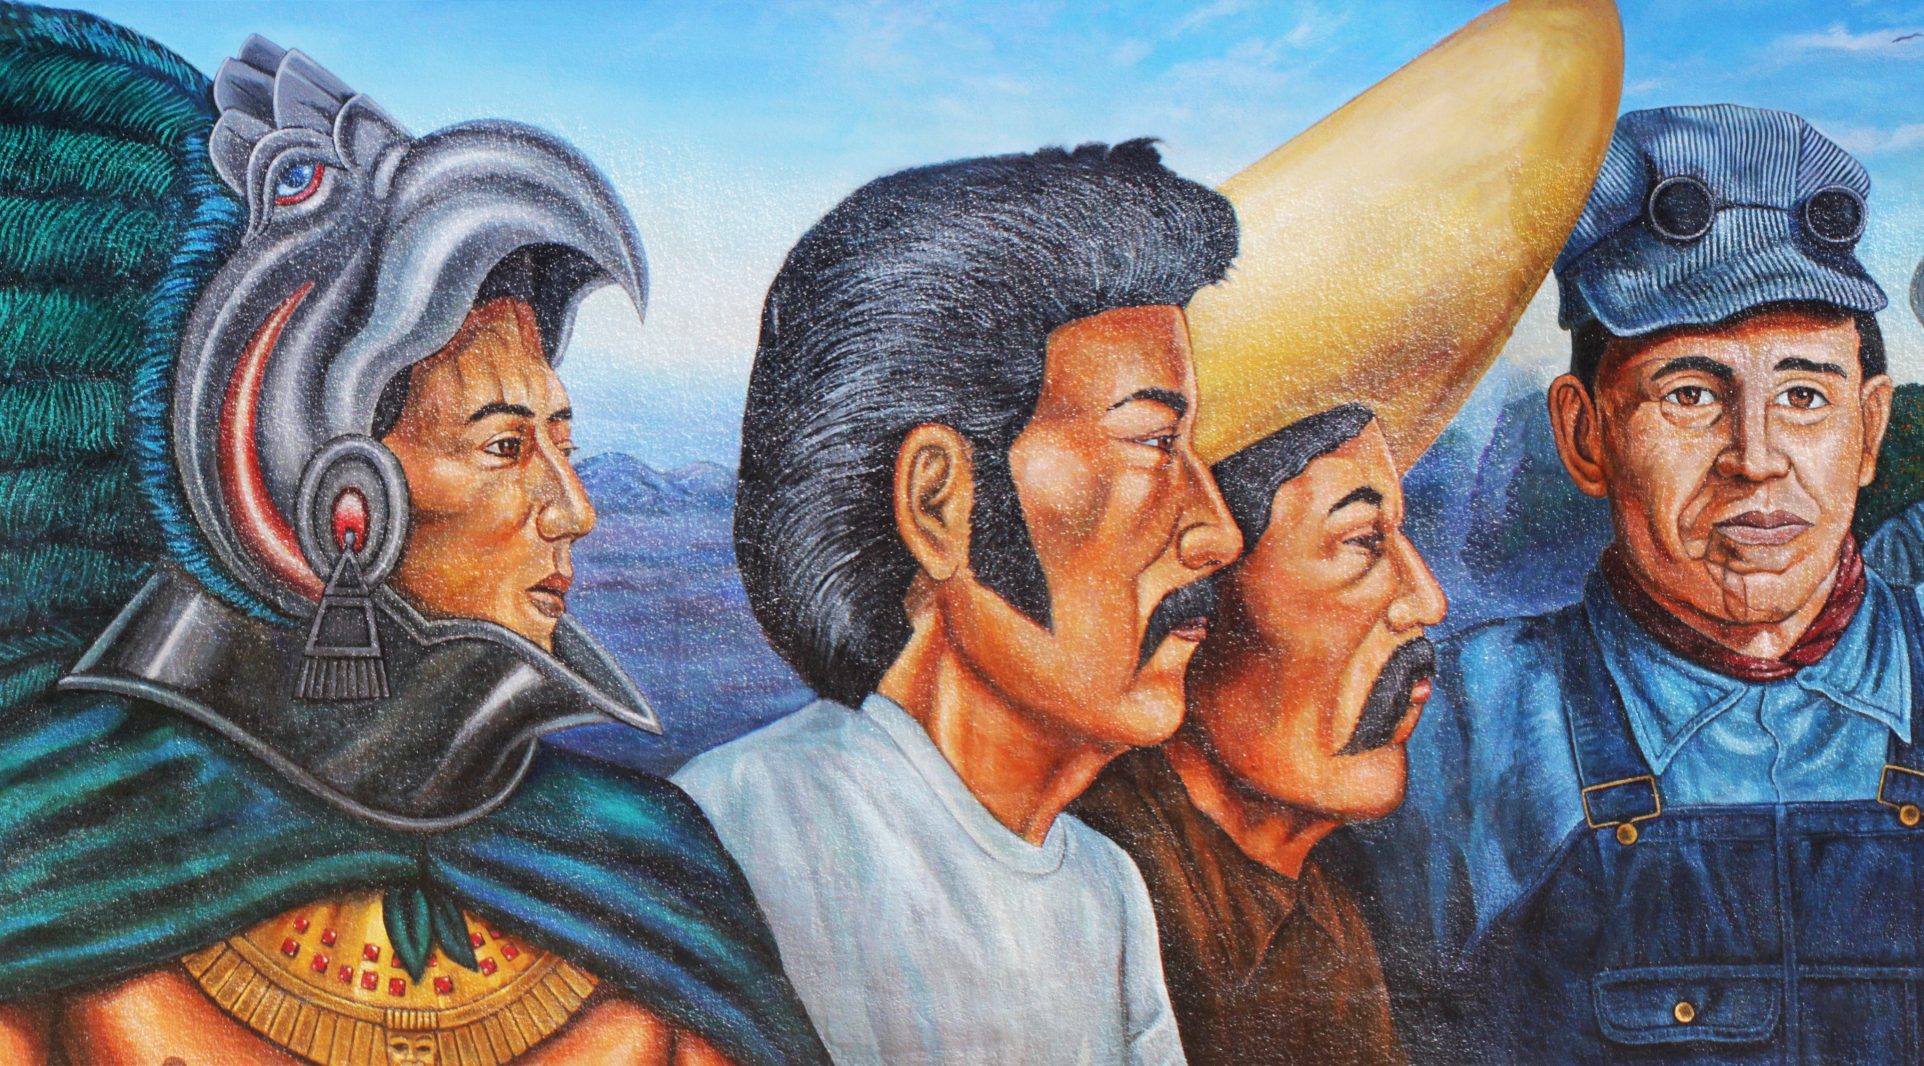 "El Proletariado de Aztlan" by Emigdio Vasquez.